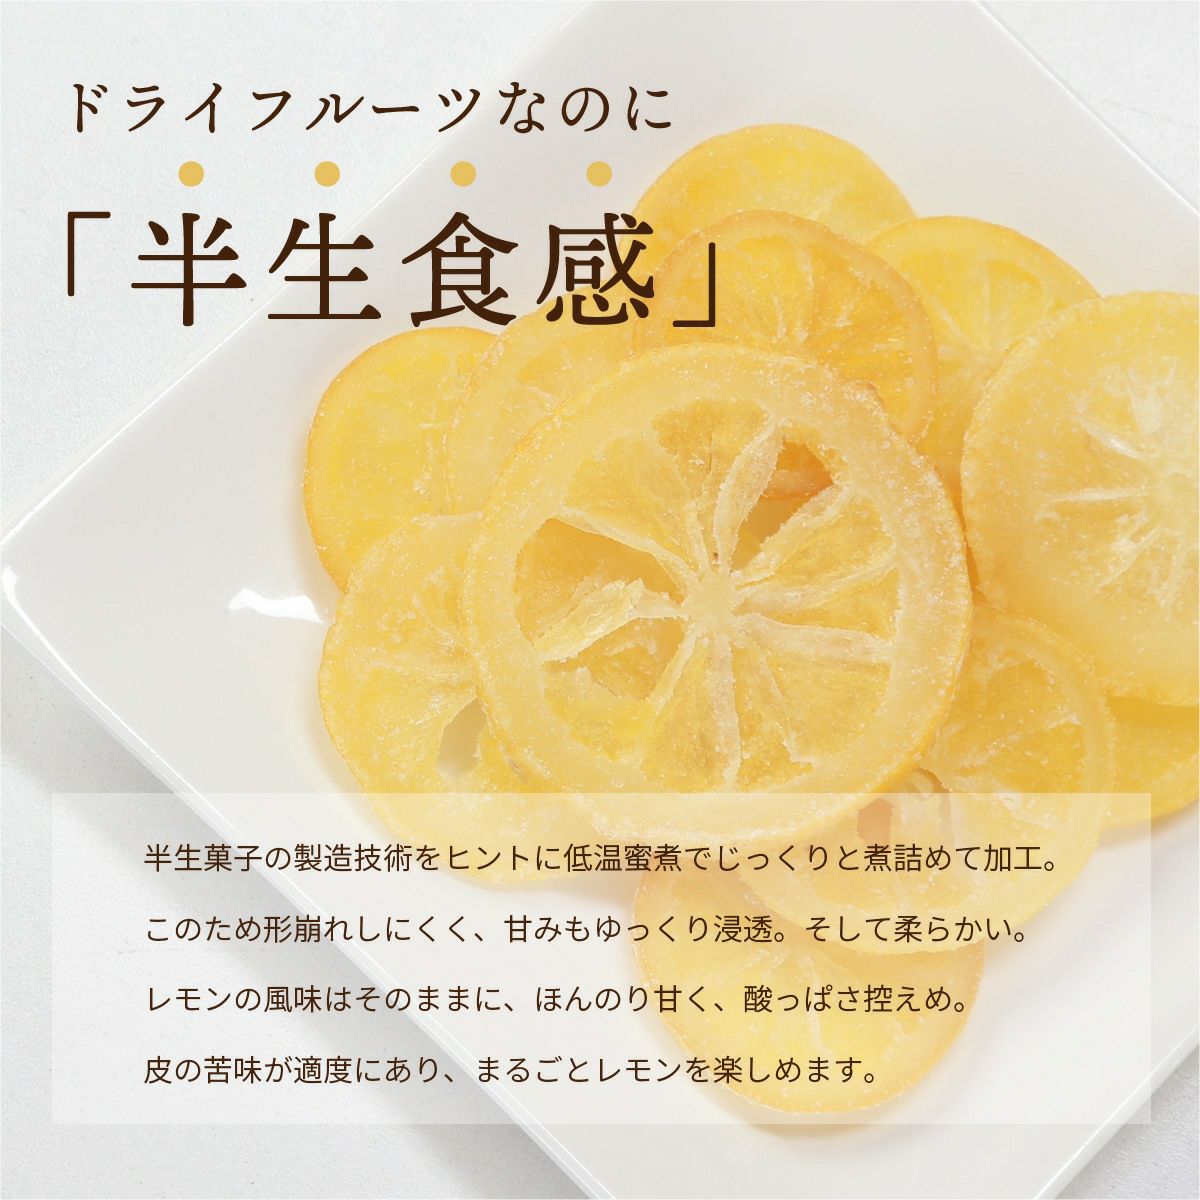 ドライフルーツ 国産 輪切り レモン 200g 特長3